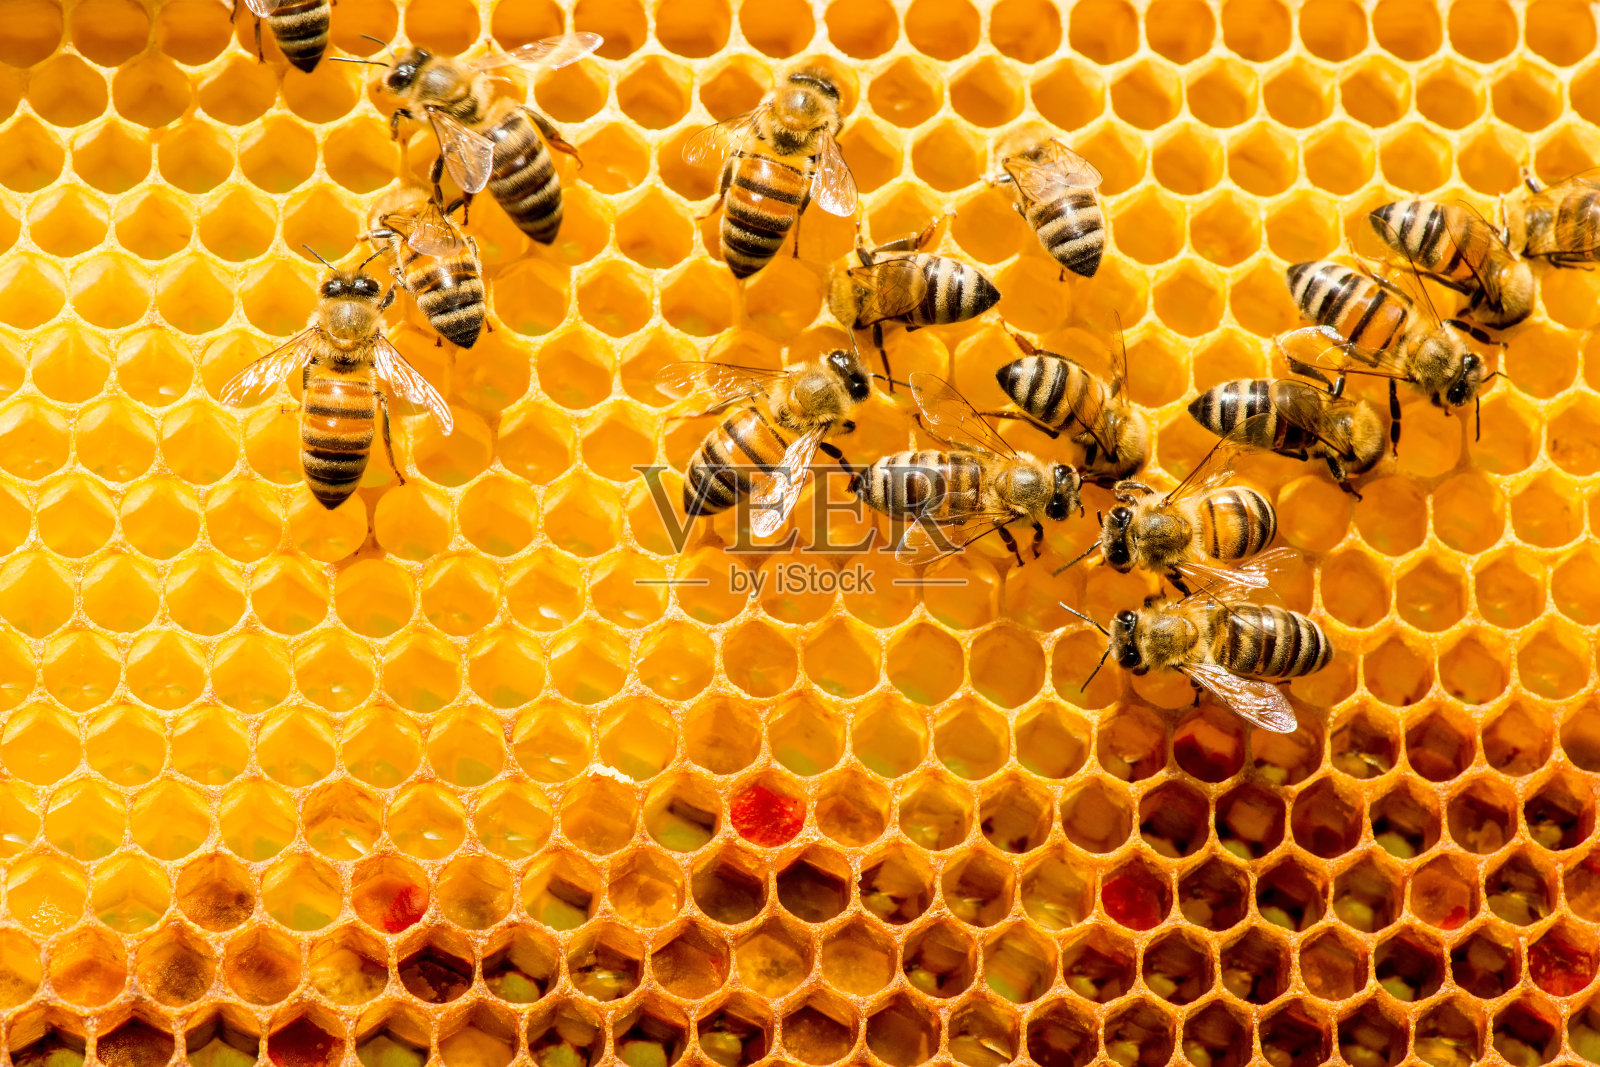 蜜蜂在蜂房蜂巢的特写照片摄影图片